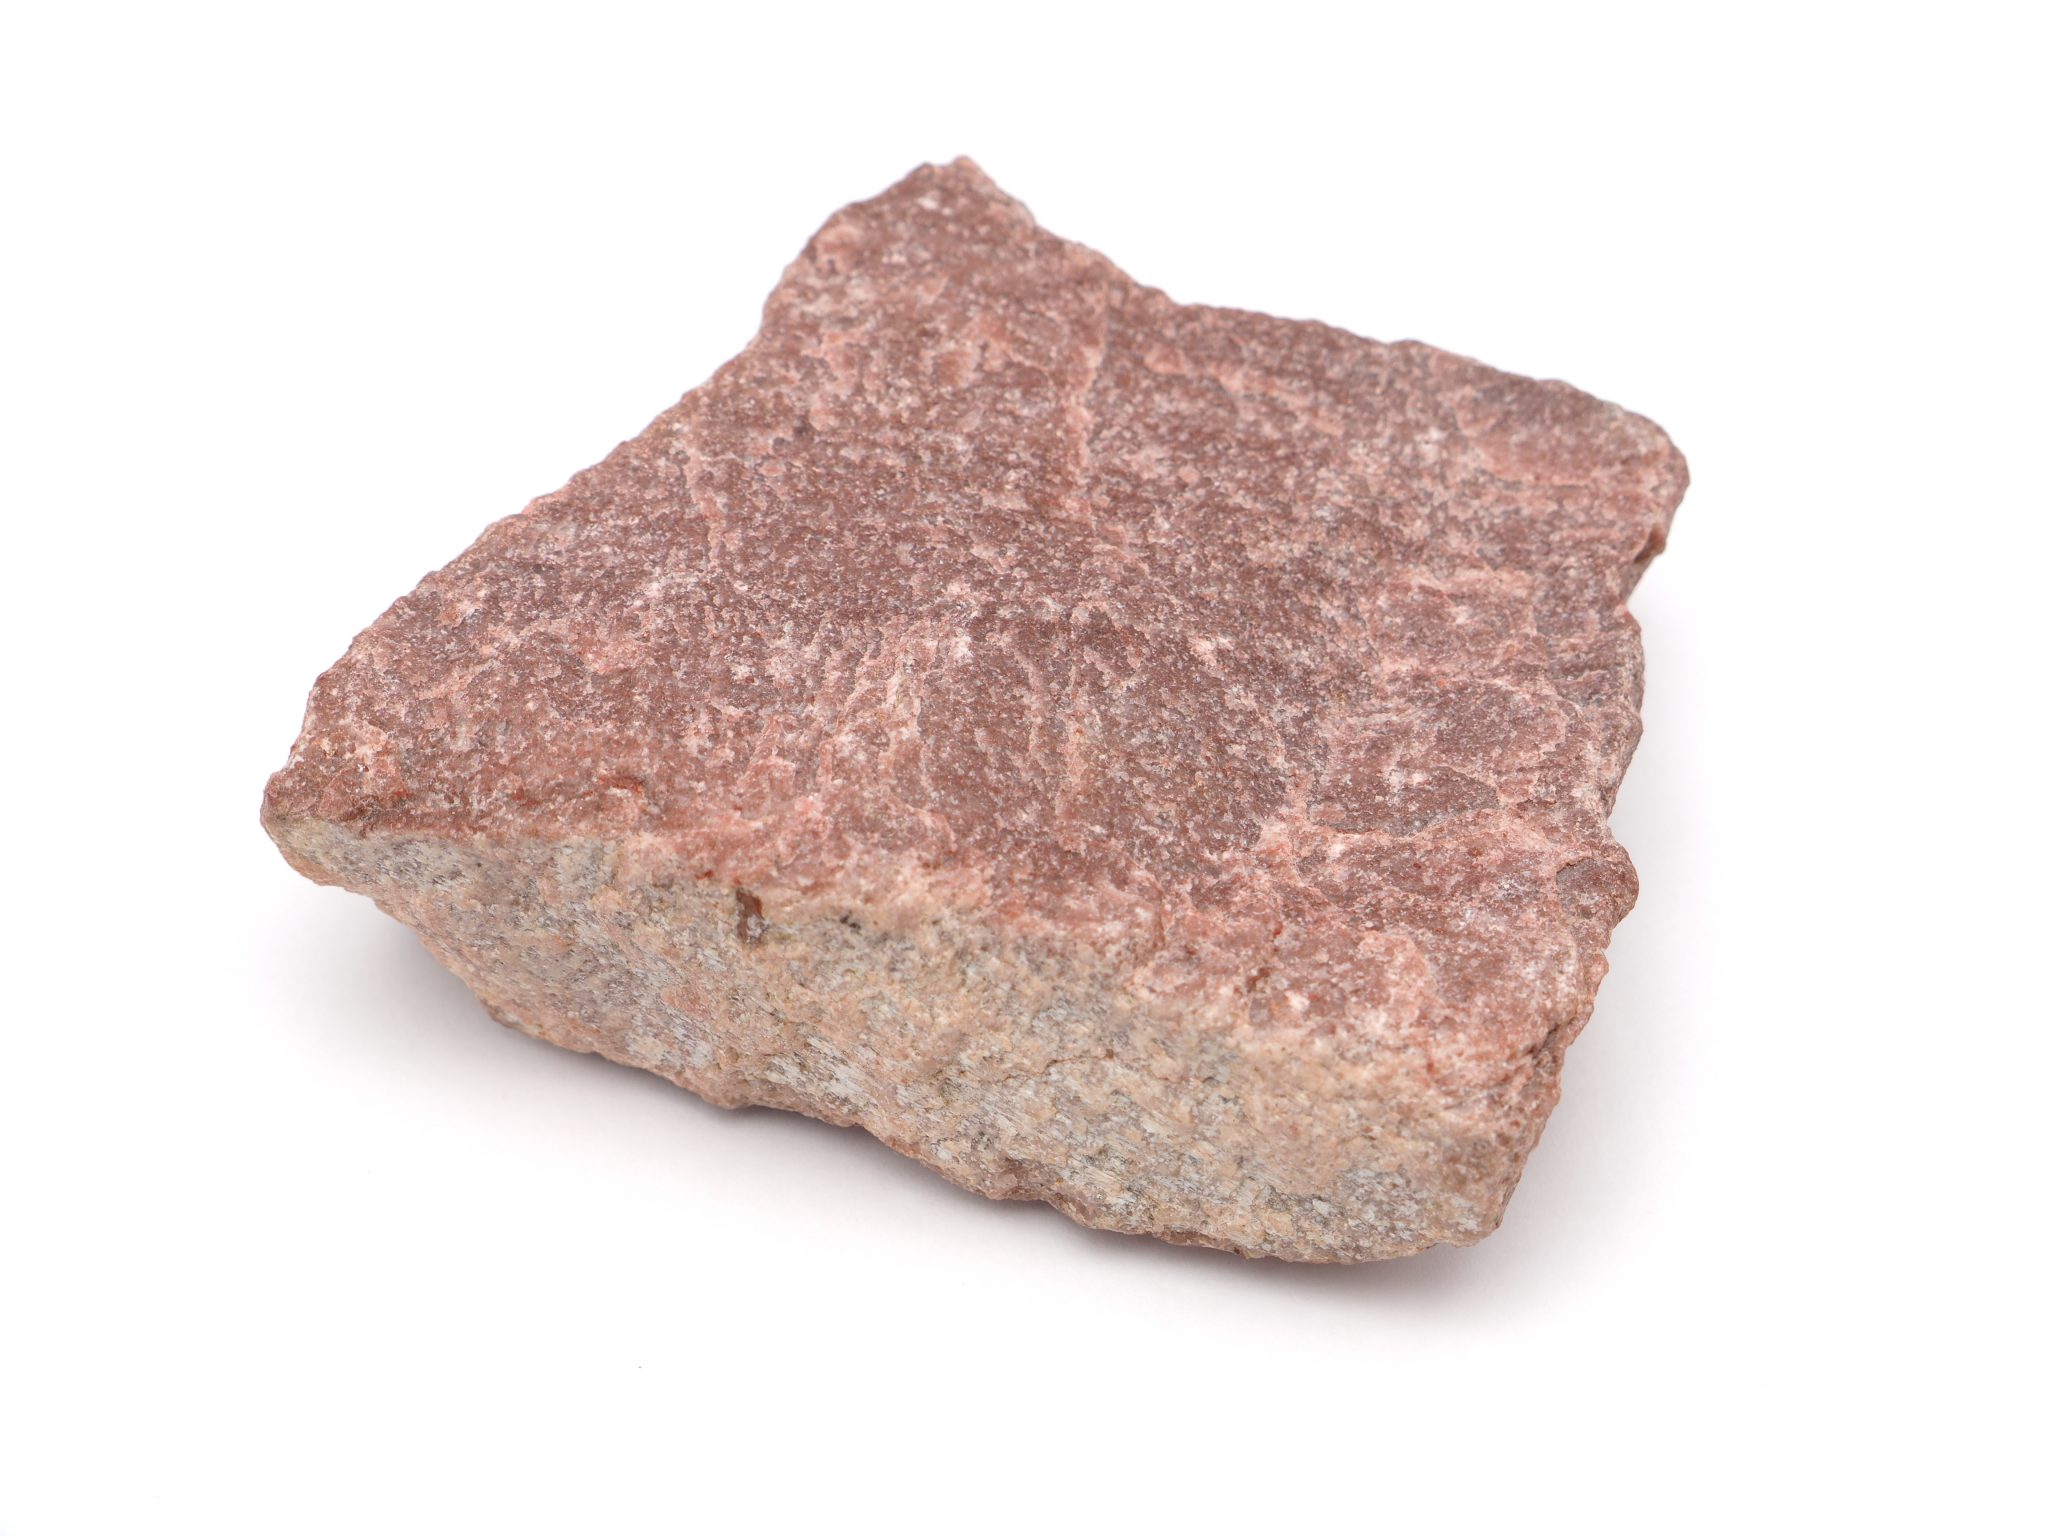 Какой камень лучше для бани: жадеит, талькохлорит, нефрит, малиновый кварцит или базальт